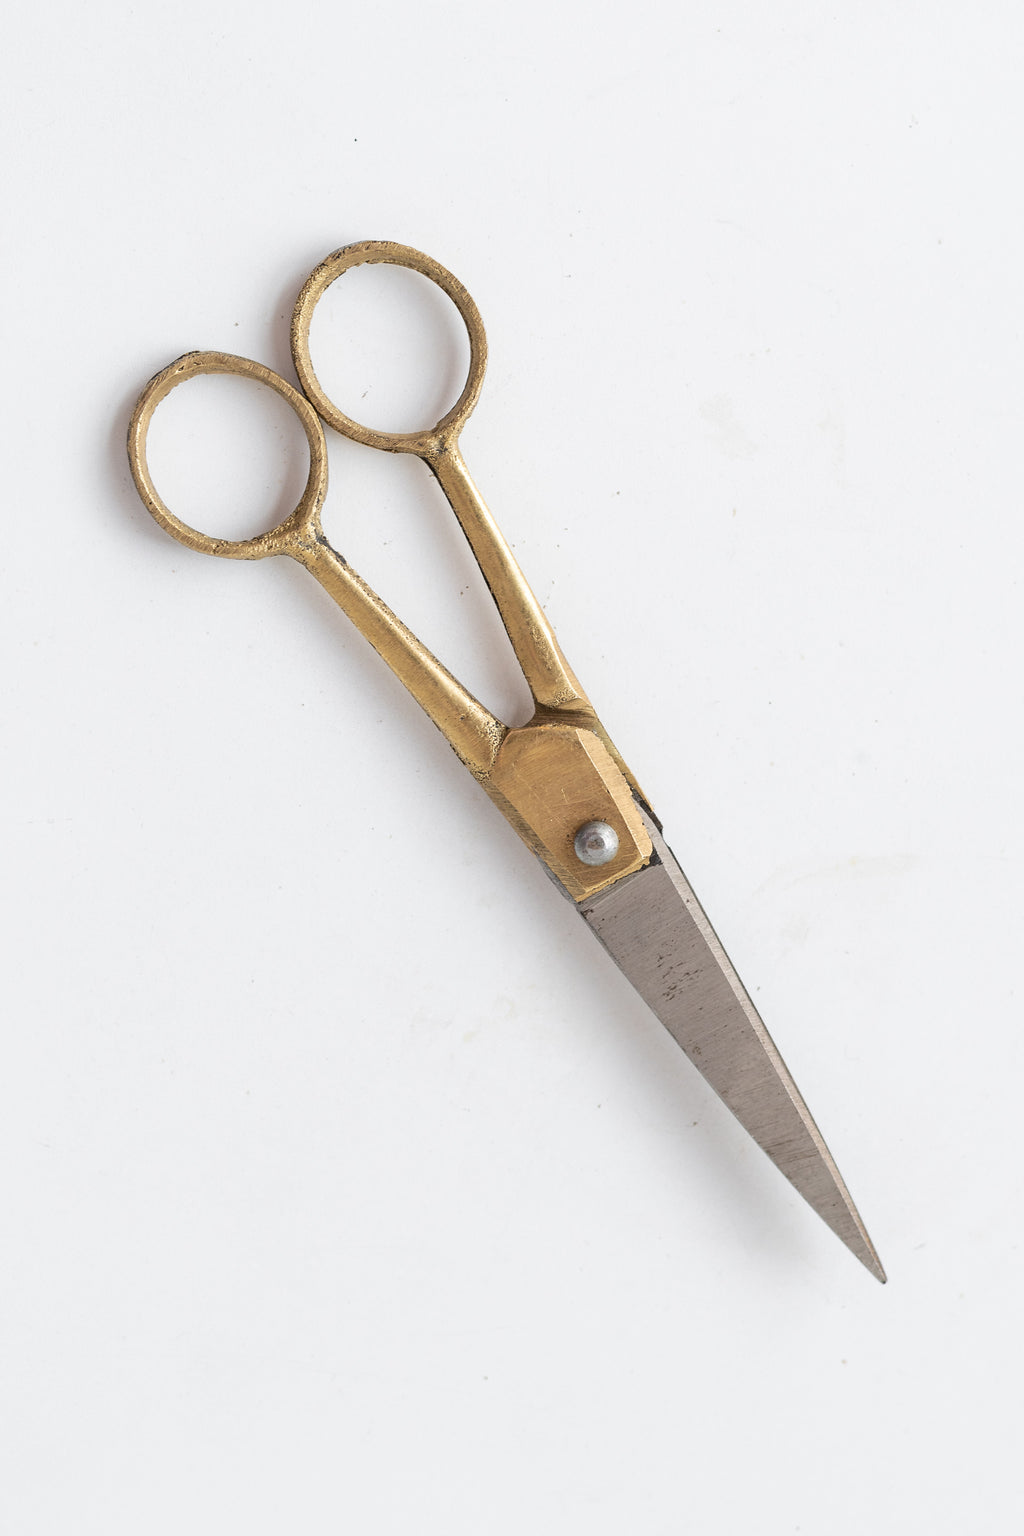 Ib Laursen Nostalgic Scissors, Small 